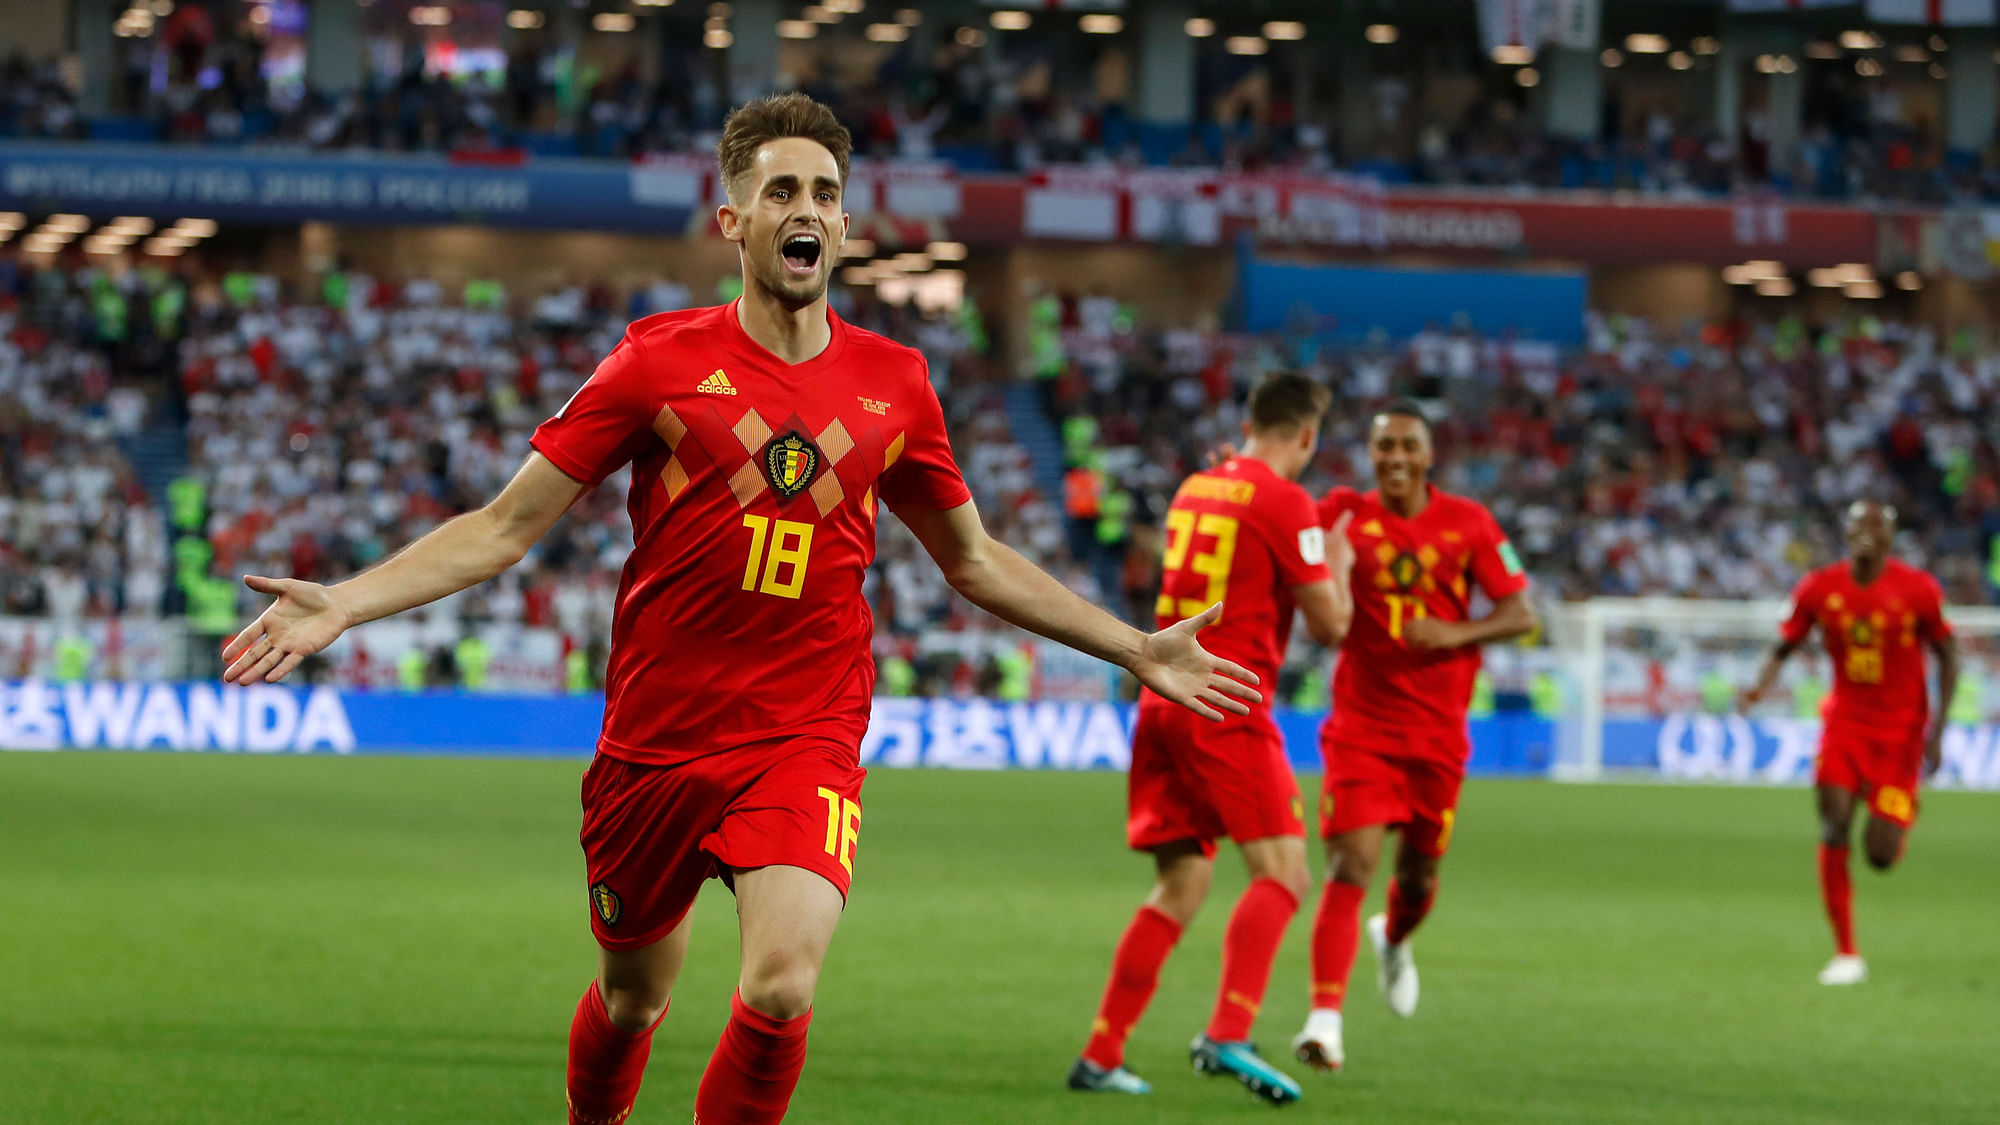 Belgium’s Adnan Januzaj celebrates after scoring the opening goal during the group G match between England and Belgium.